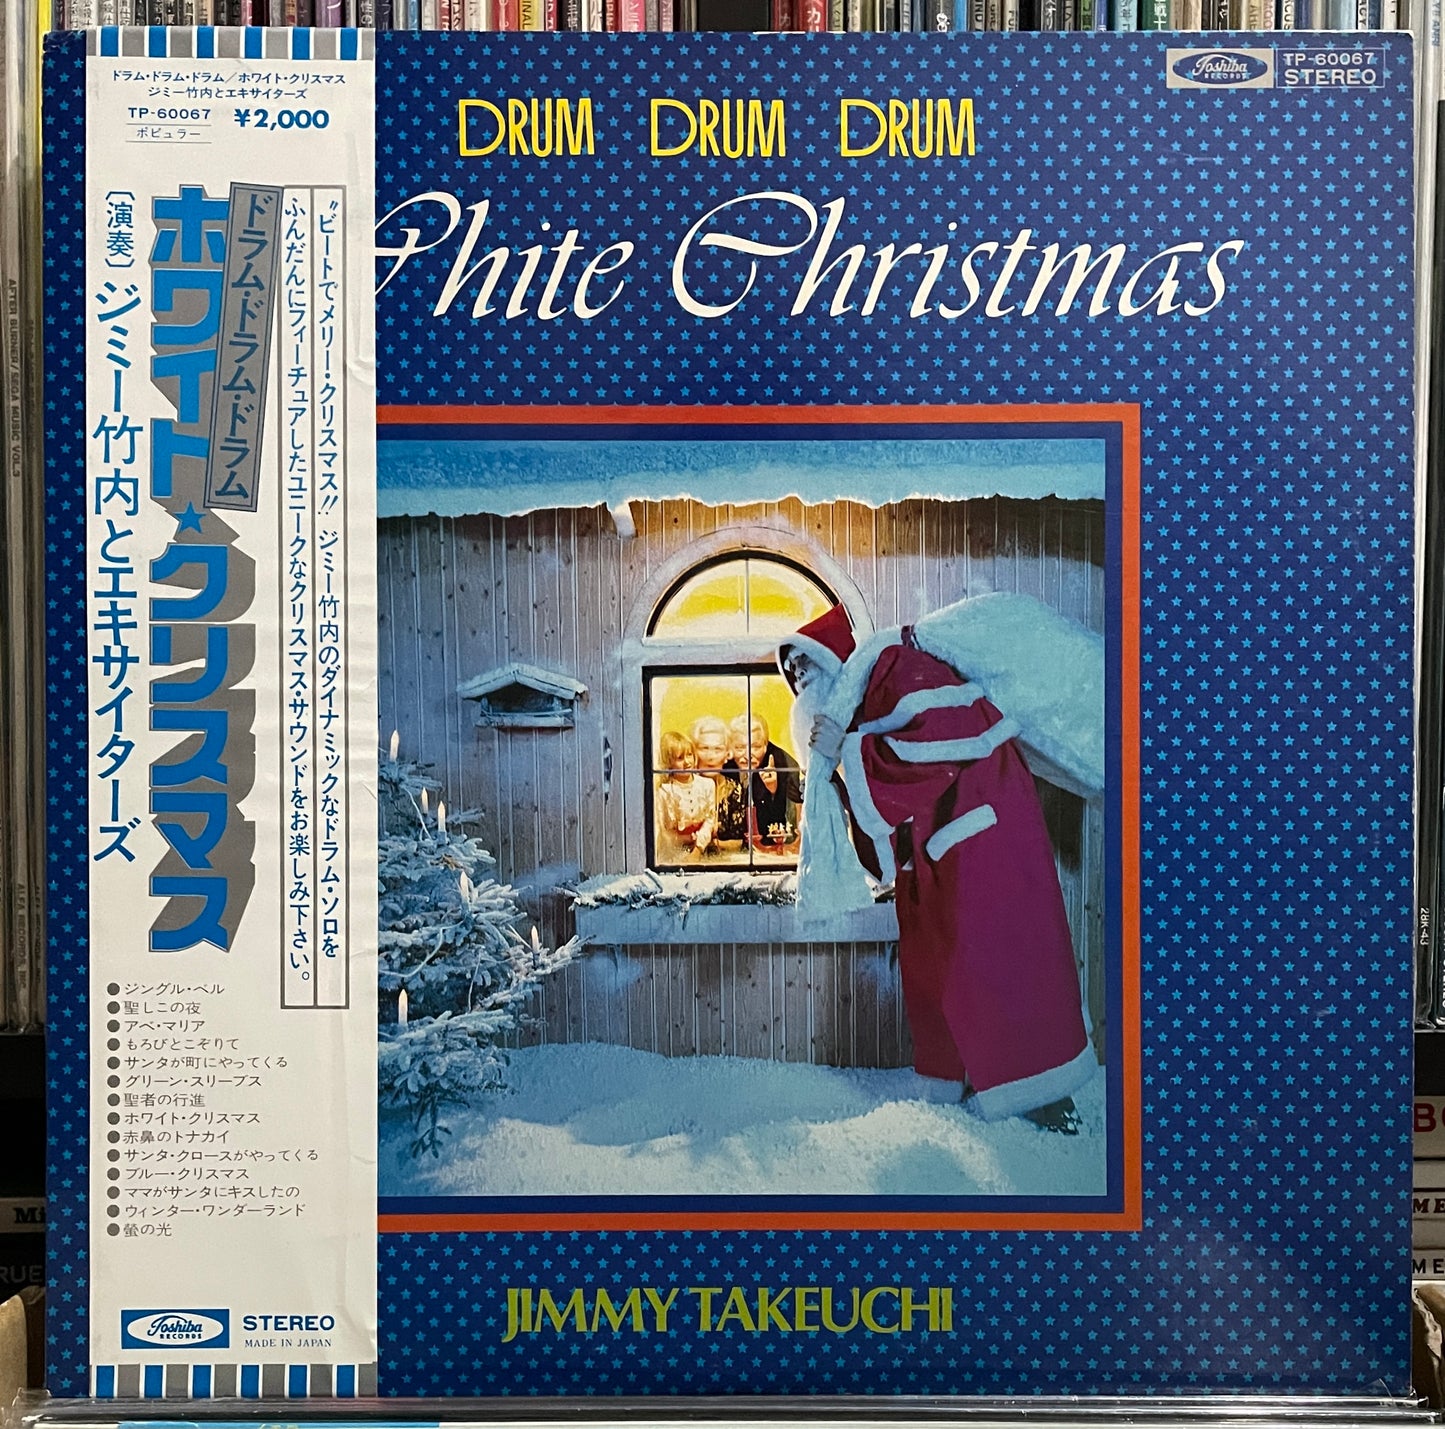 Jimmy Takeuchi “Drum, Drum, Drum - White Christmas” (19??)